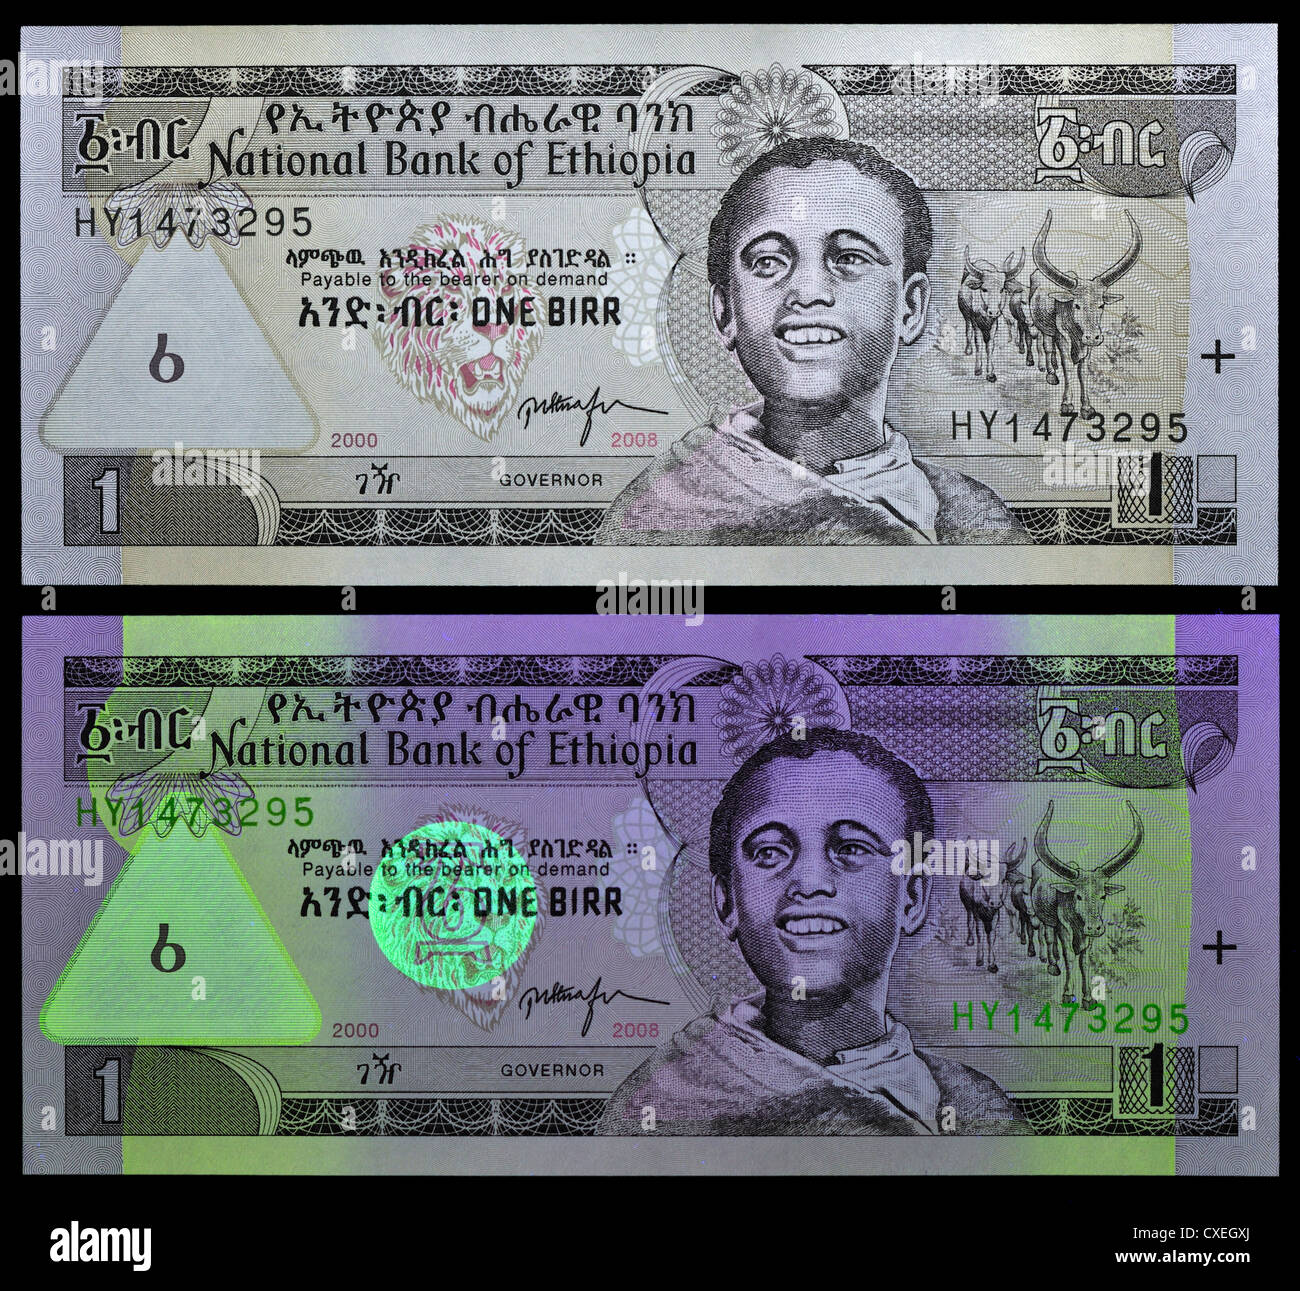 Vu des billets avec la lumière naturelle et la lumière UV, montrant les fonctions de sécurité. Une note de Birr, Éthiopie, 2000. Banque D'Images